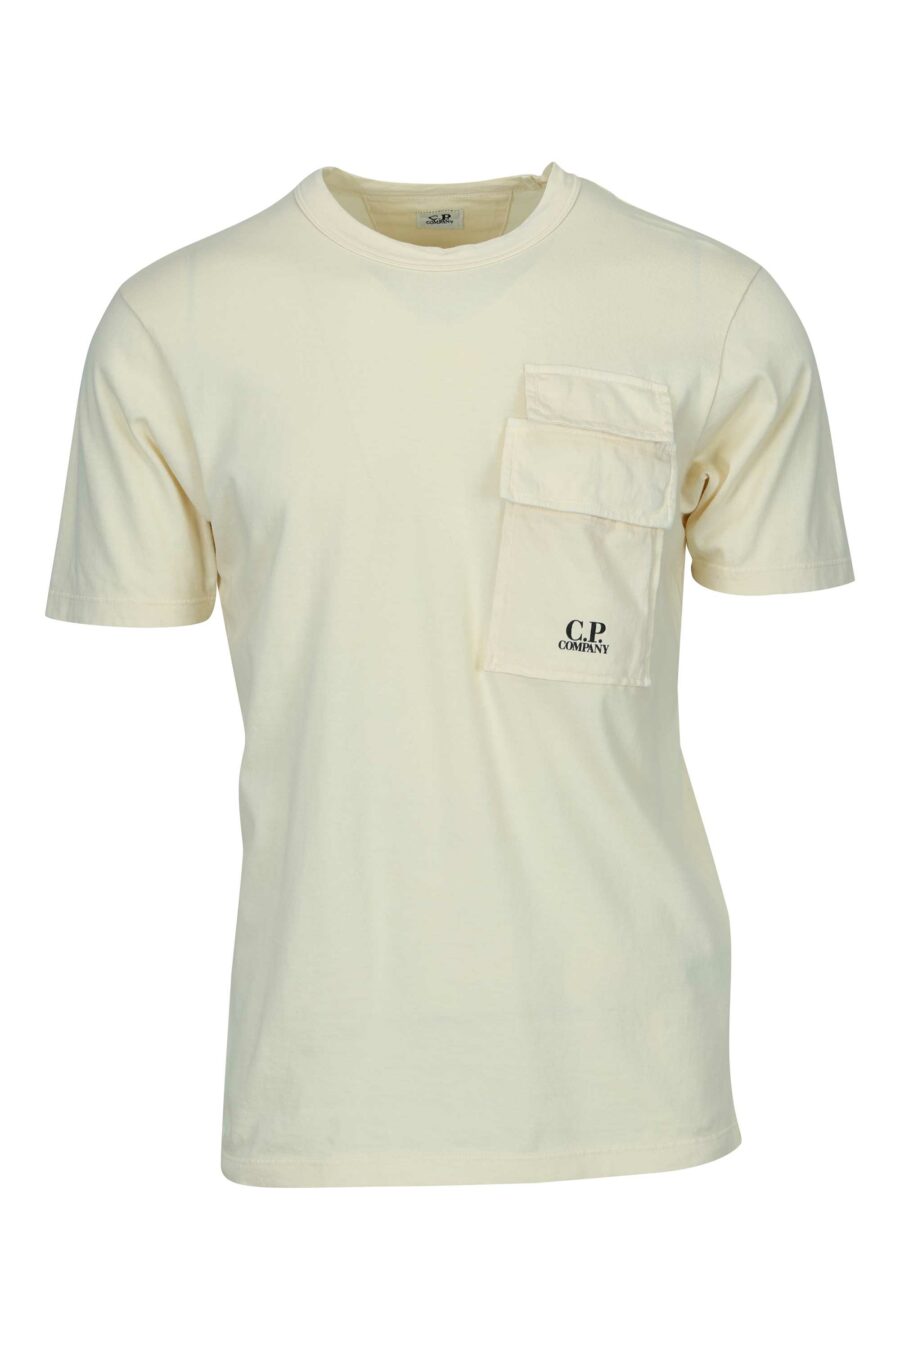 T-shirt beige avec poches et mini-logo "cp" - 7620943766882